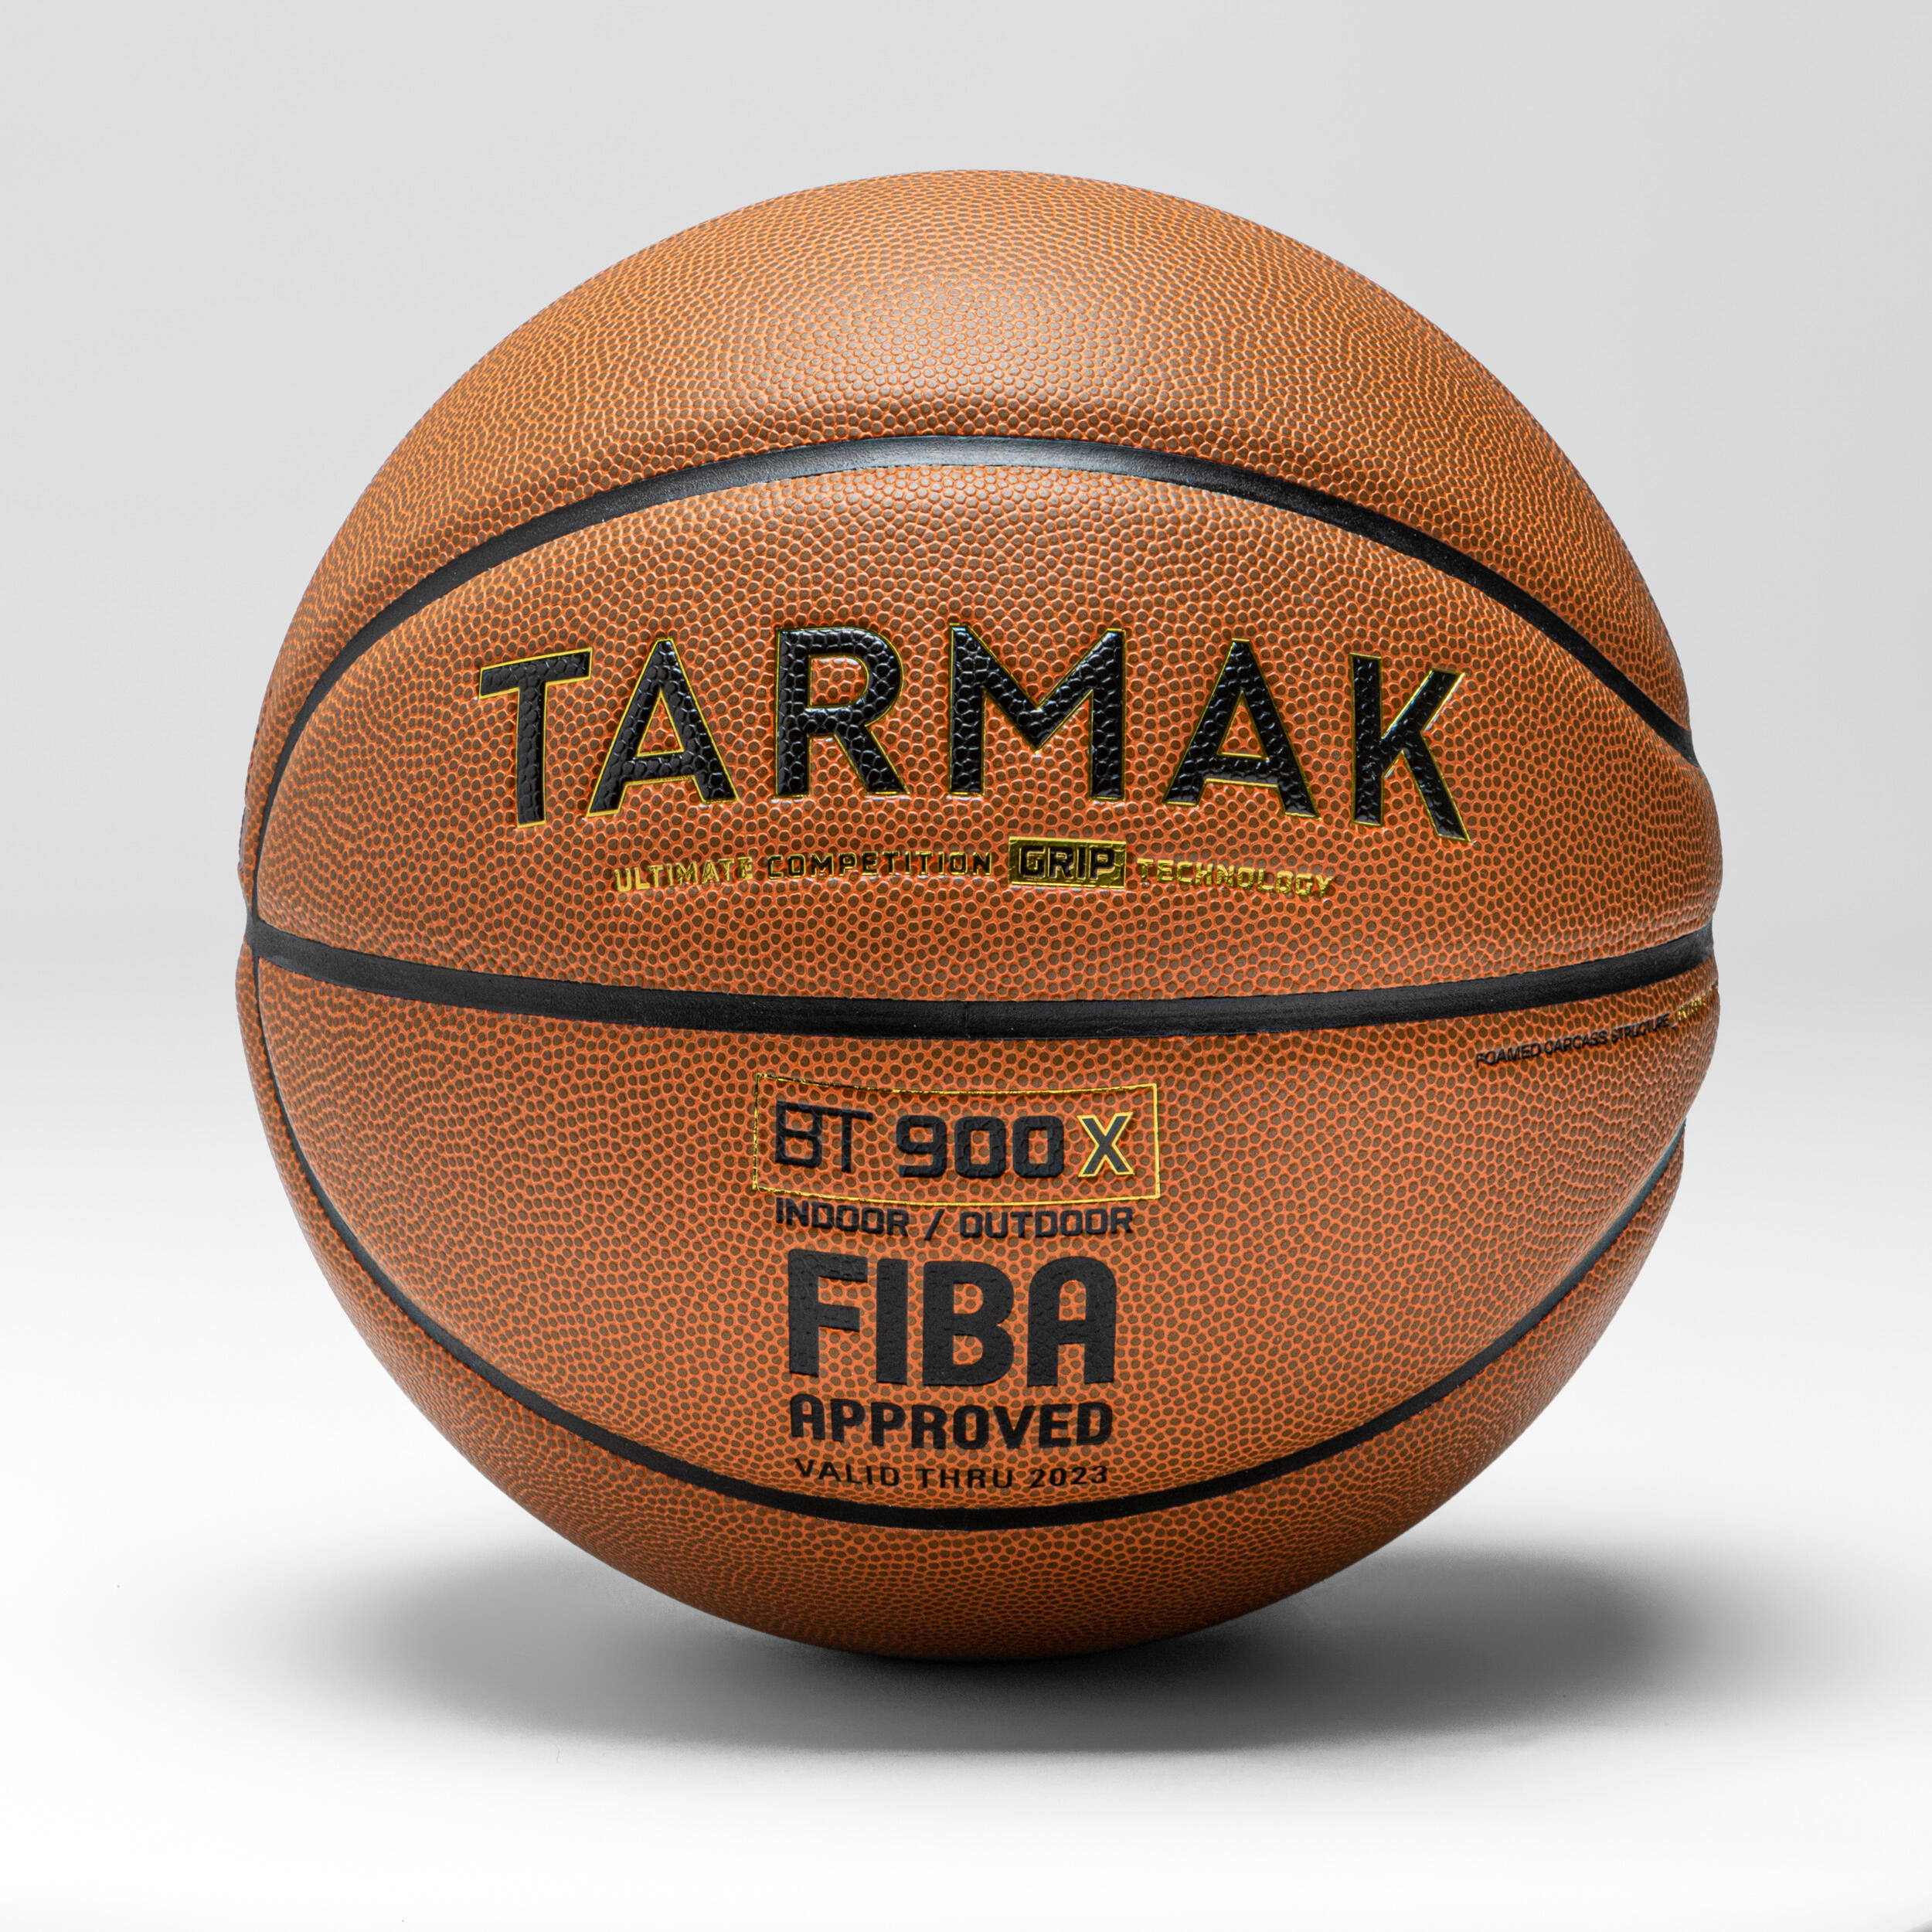 Basketboll Storlek 7 - Fiba Bt900 Grip Touch - Orange